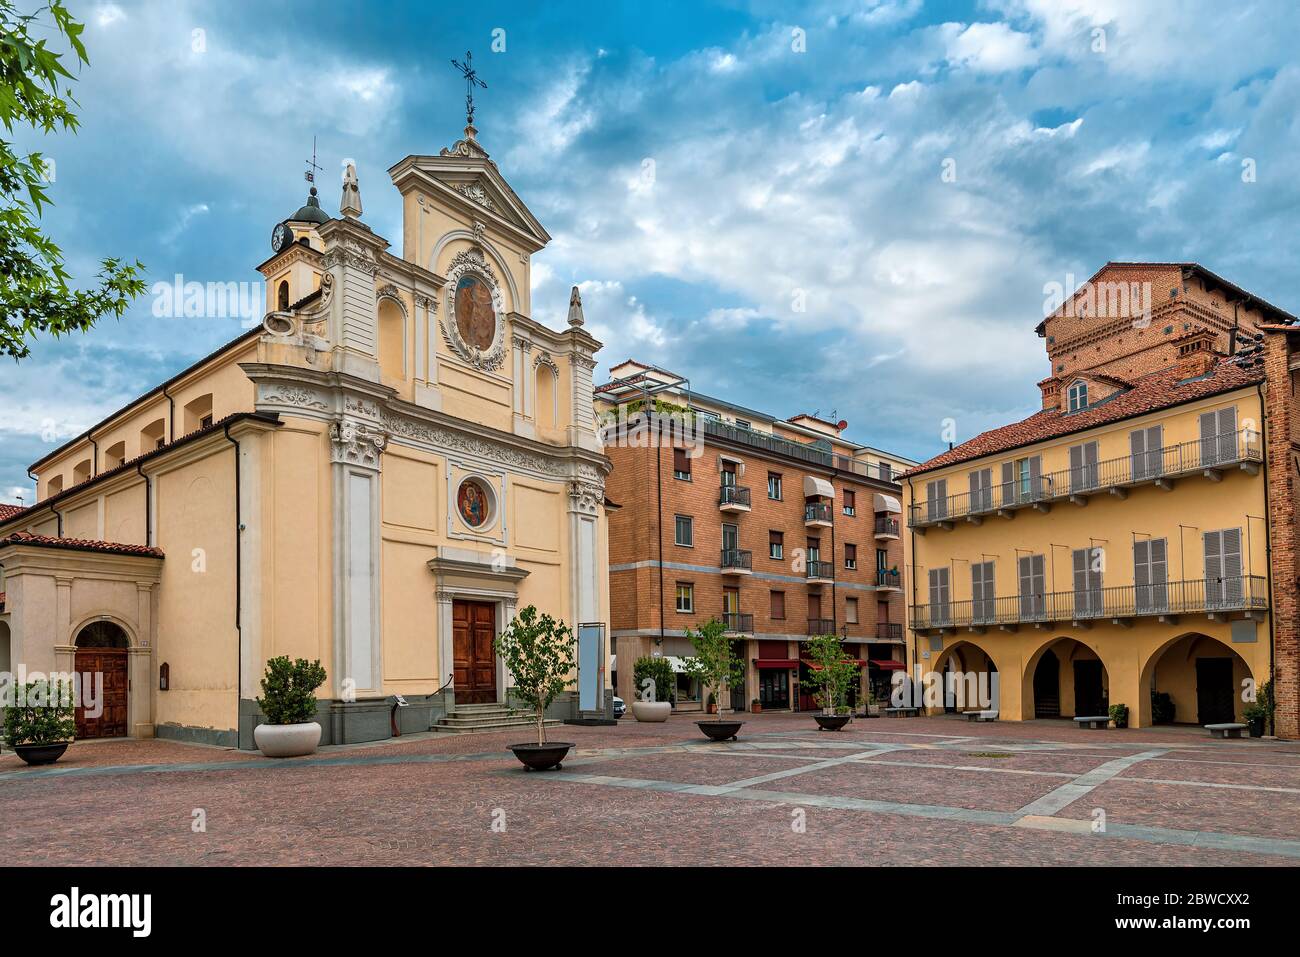 Chiesa cattolica e casa storica sulla piccola piazza del paese sotto il cielo nuvoloso ad Alba, Piemonte, Italia settentrionale. Foto Stock